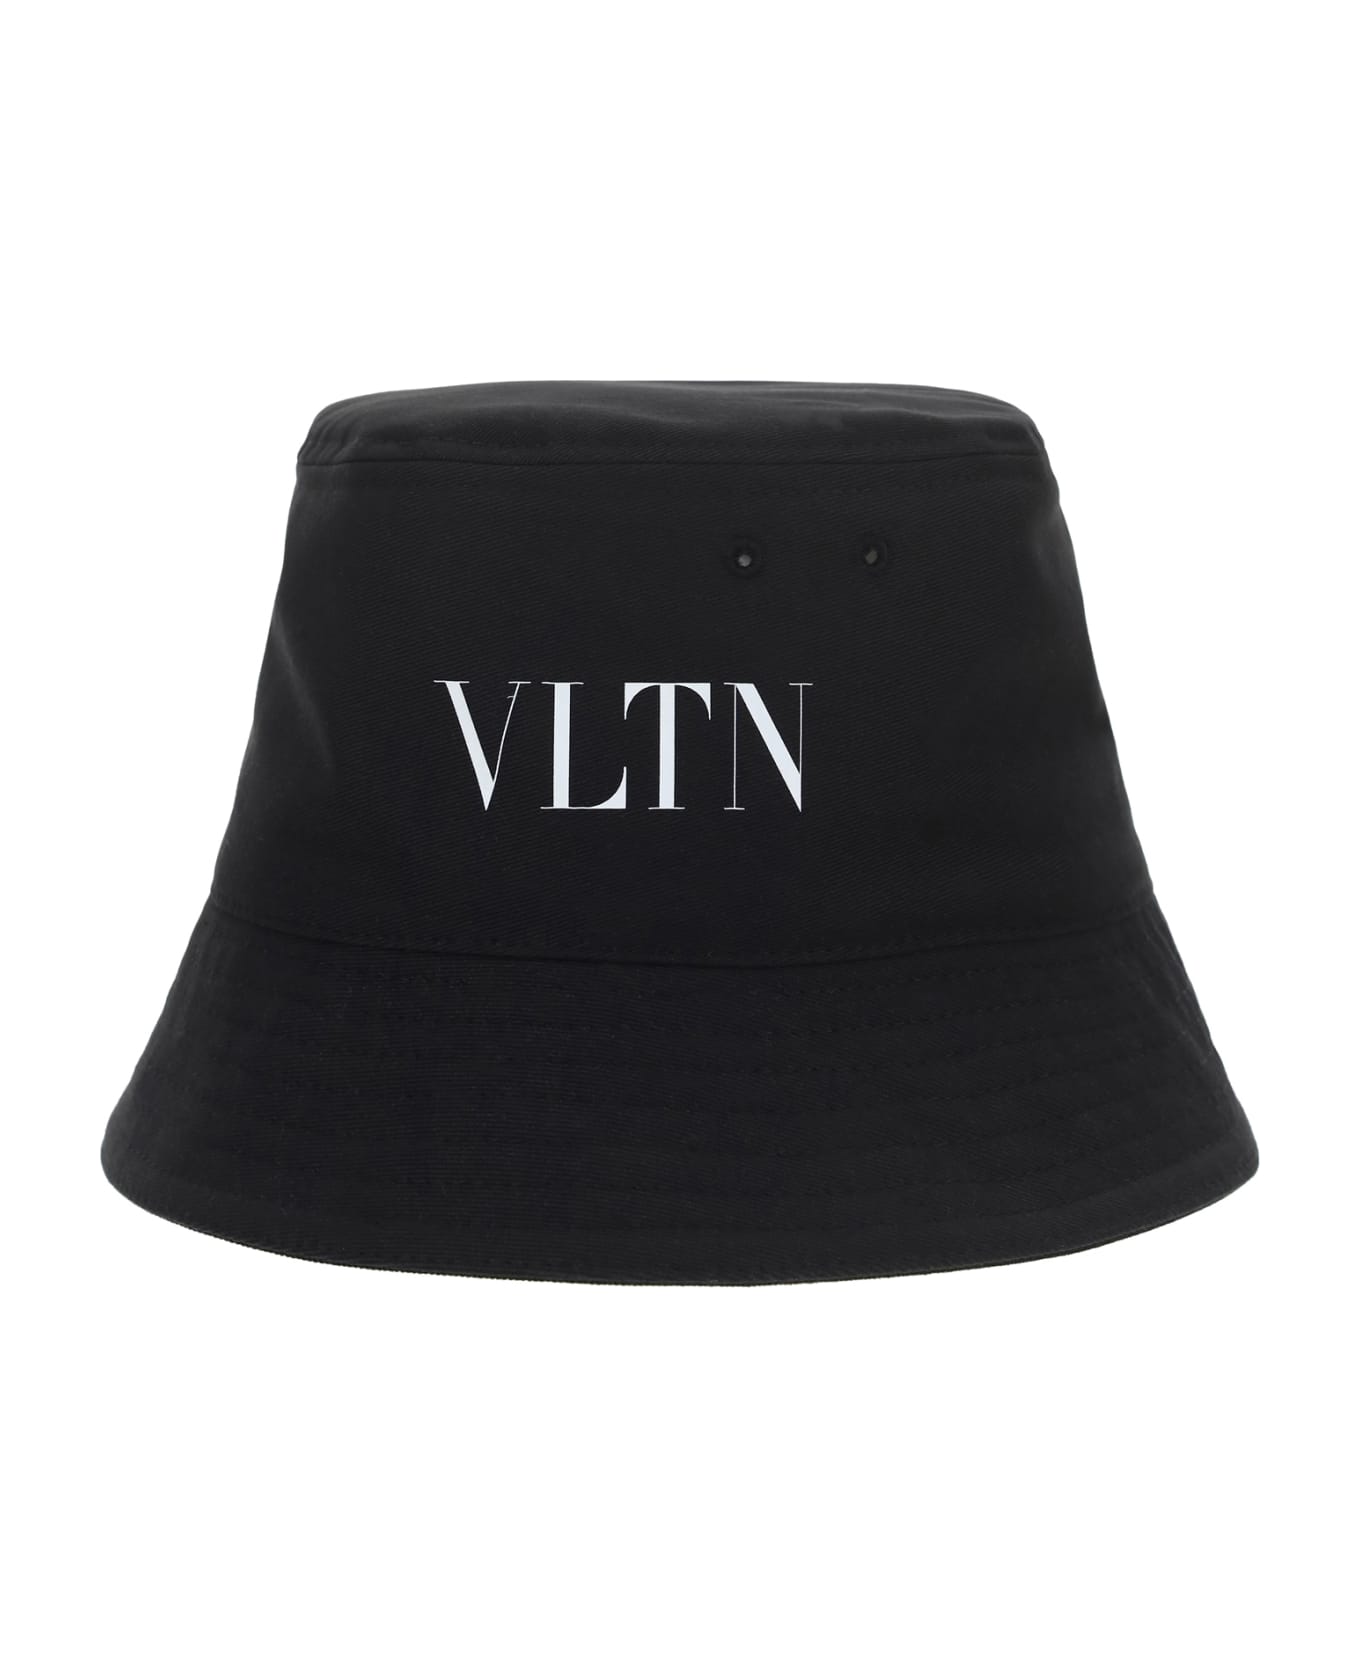 Valentino Garavani 'vltn' Bucket Hat - Nerobianco